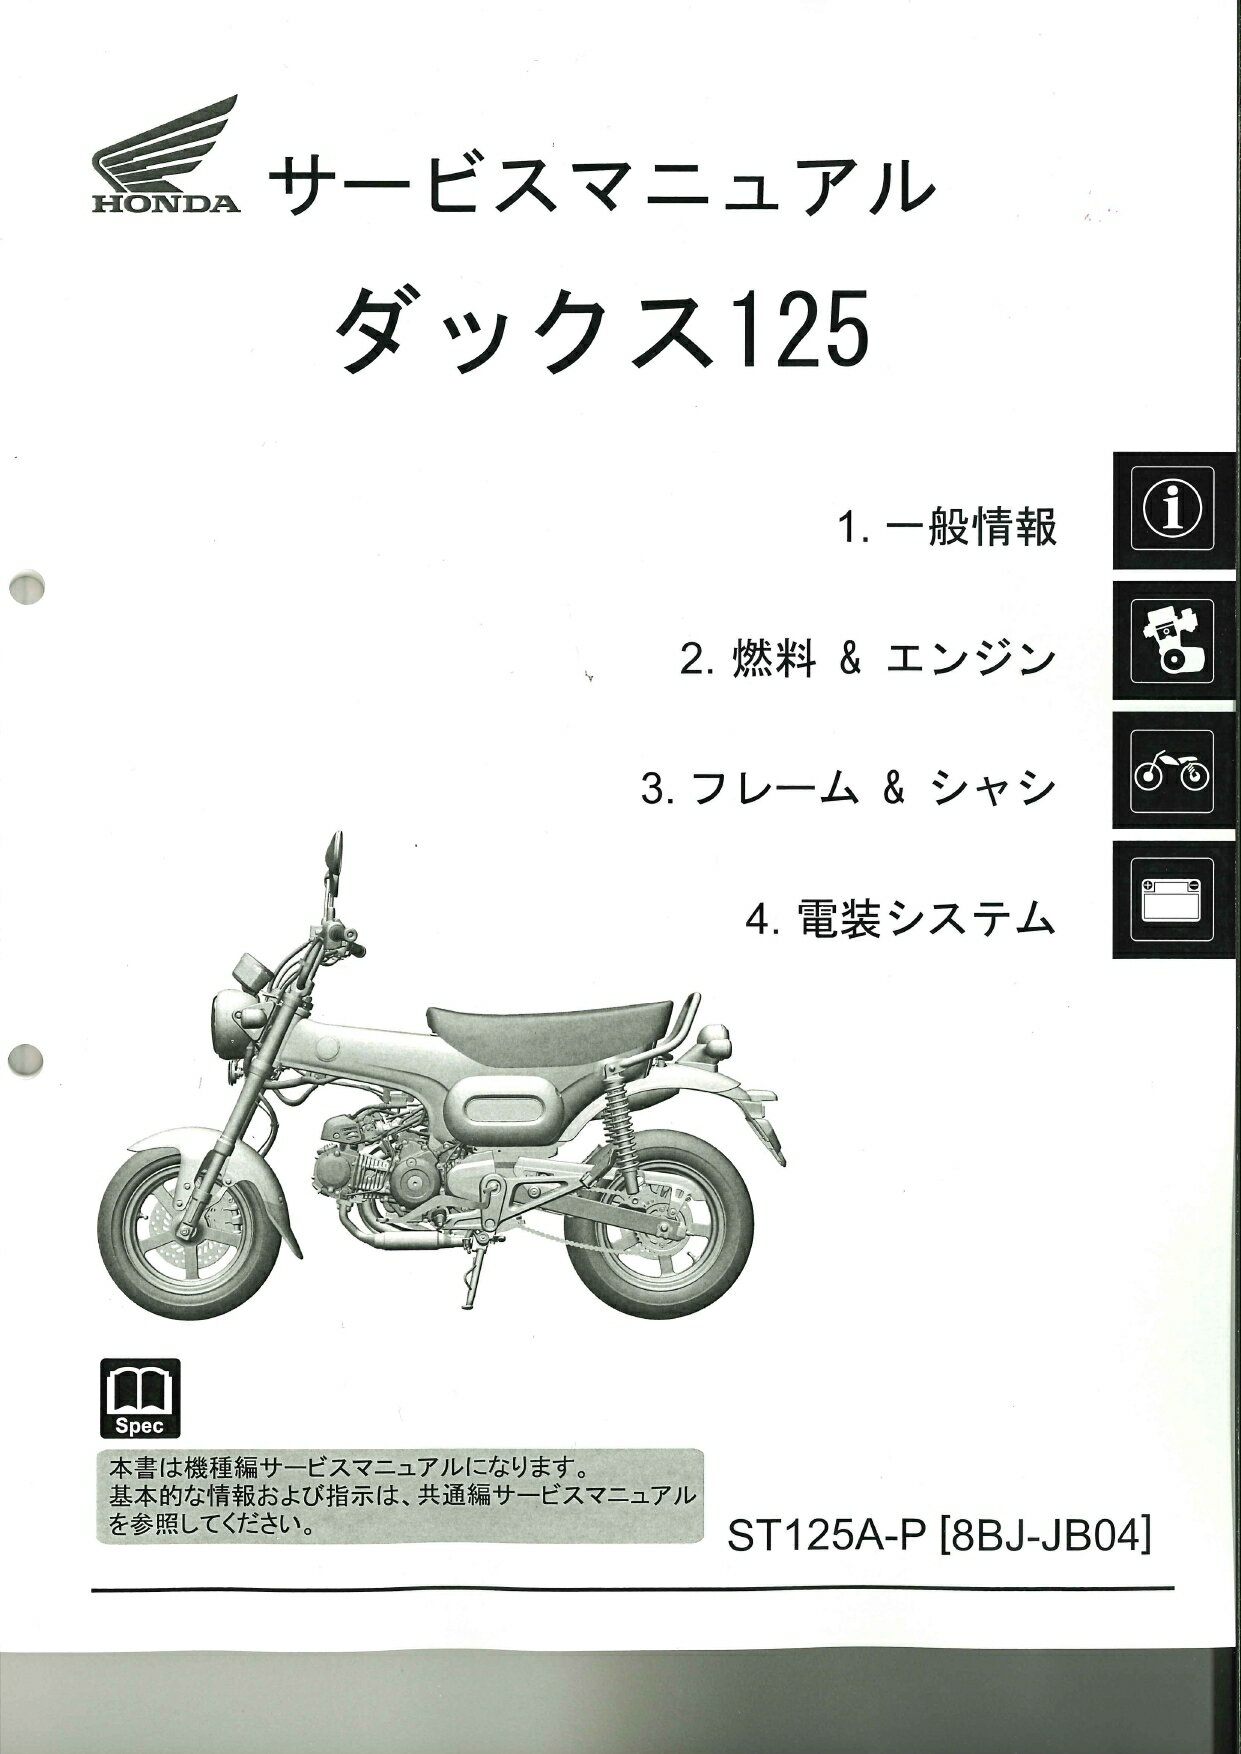 SR400 パーツリスト 1版 ヤマハ 正規 バイク 整備書 3HTJ RH01J 整備に役立ちます wx 車検 パーツカタログ 整備書 【中古】